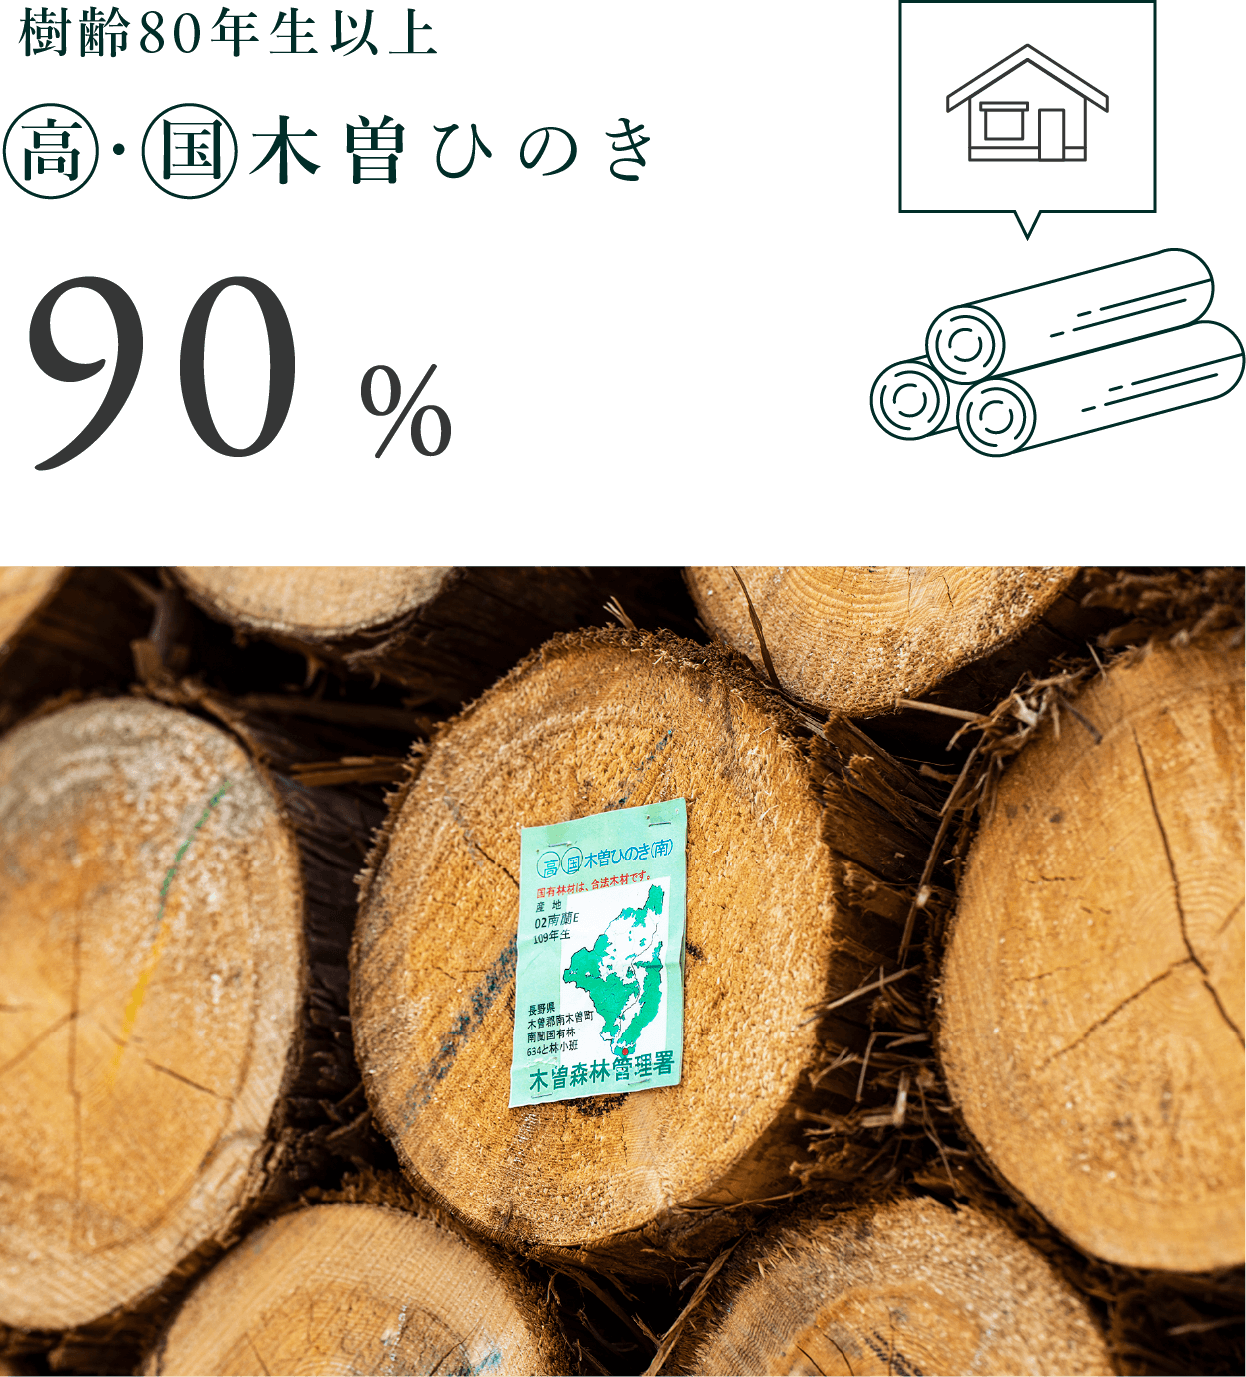 樹齢80年生以上◯高・◯国木曽檜90%